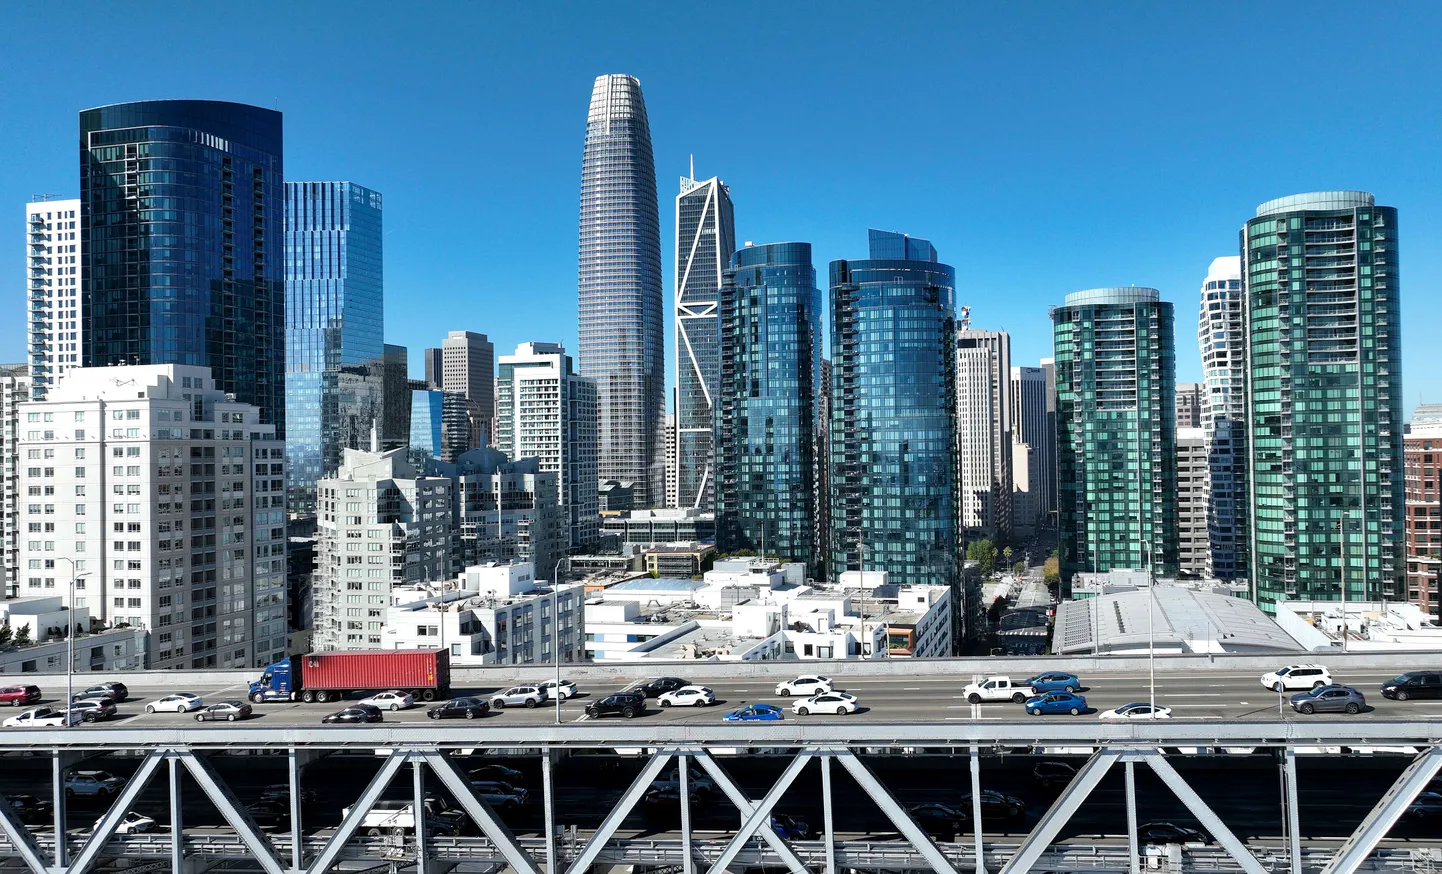 San Francisco ärikinnisvara paistab silma suure vakantsusega